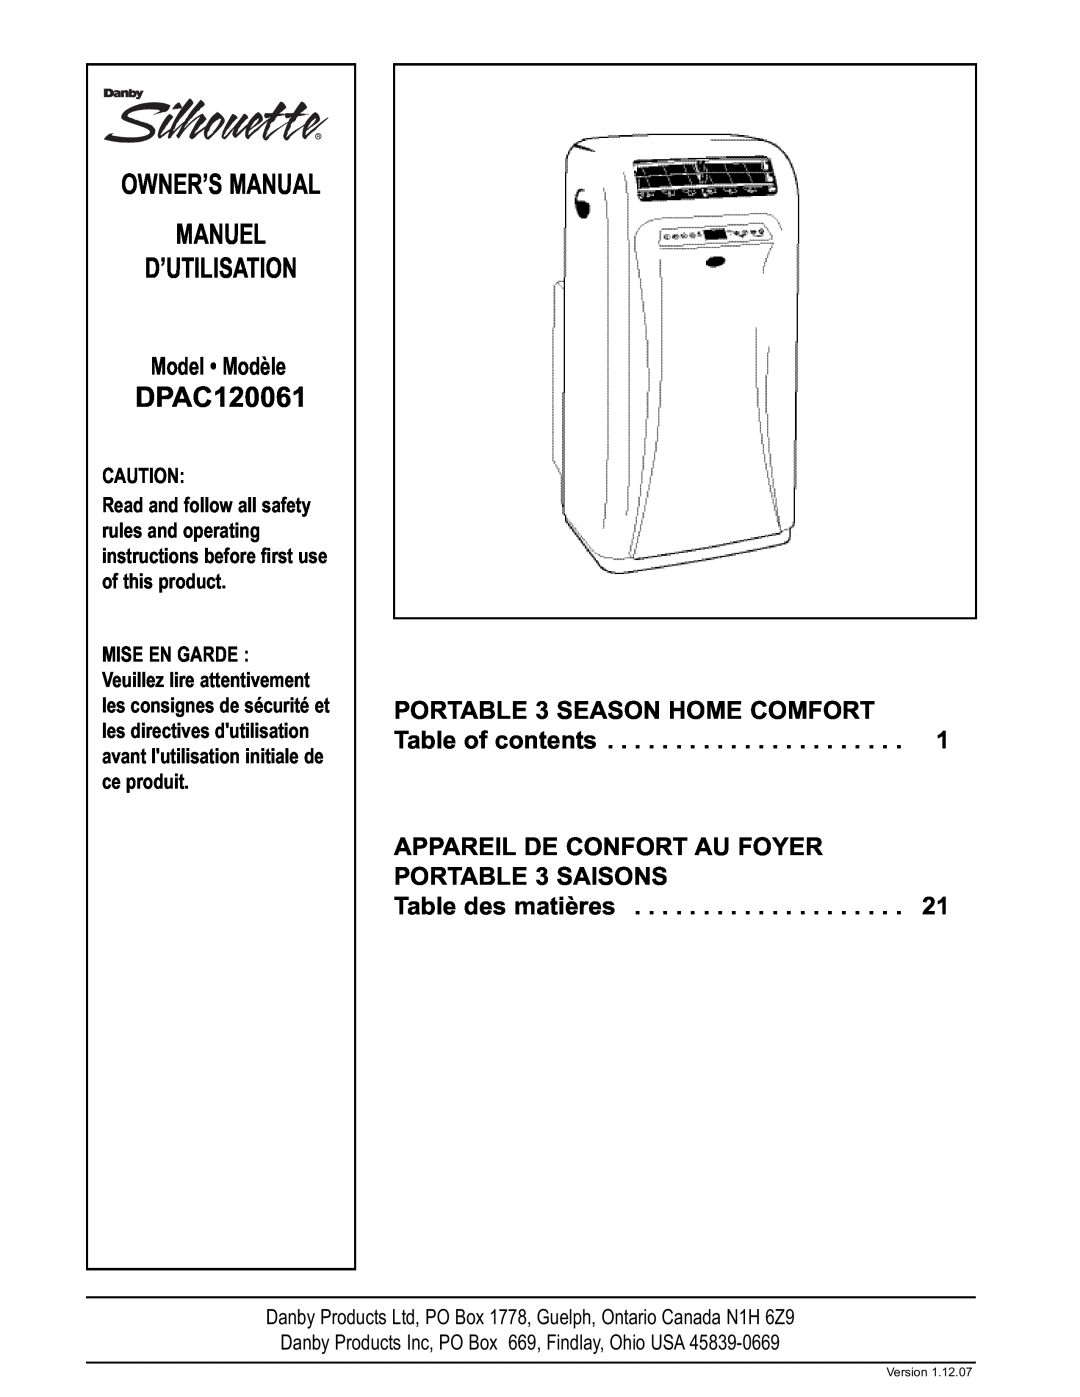 Danby DPAC120061 owner manual Model Modèle, APPAREIL DE CONFORT AU FOYER PORTABLE 3 SAISONS, Advertencia 